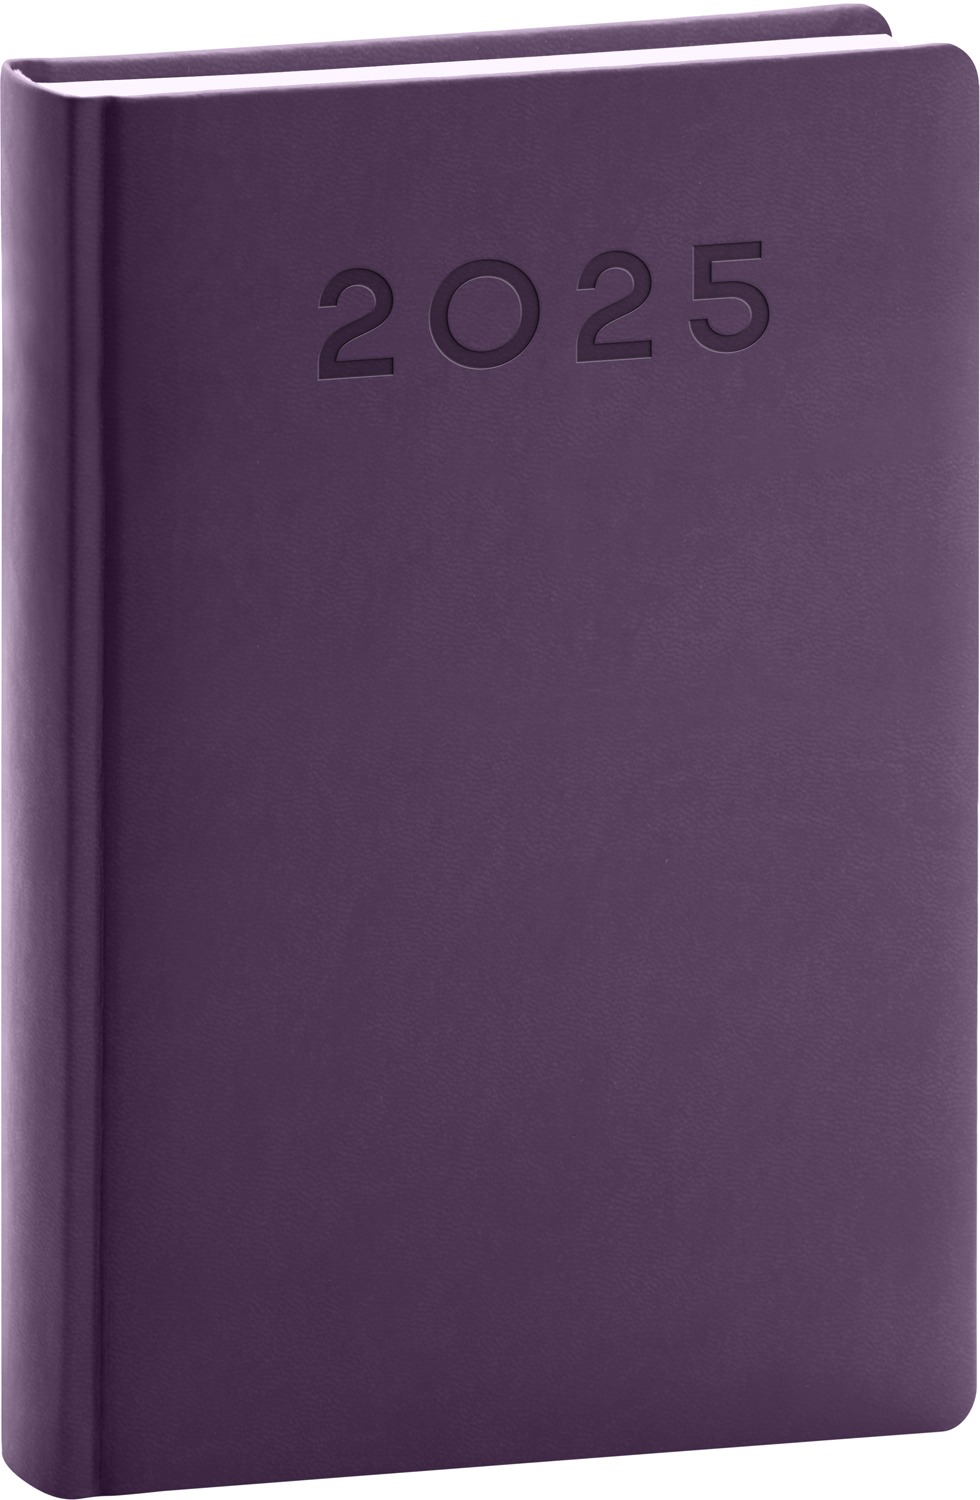 Denní diář Aprint Neo 2025, B6 - fialová